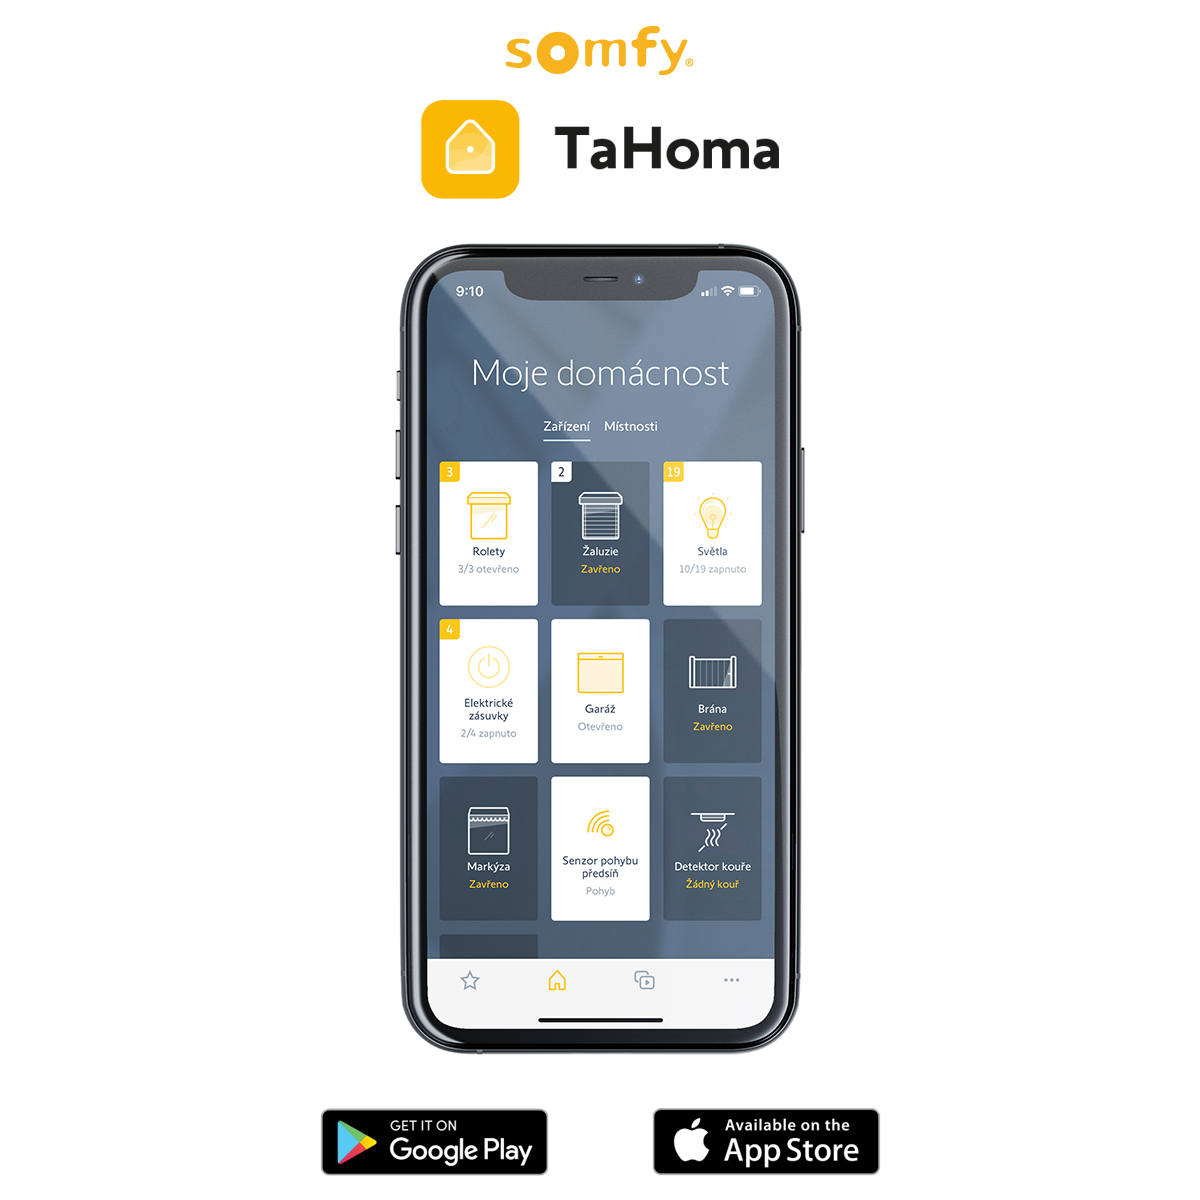 tahoma 3.0 app 2